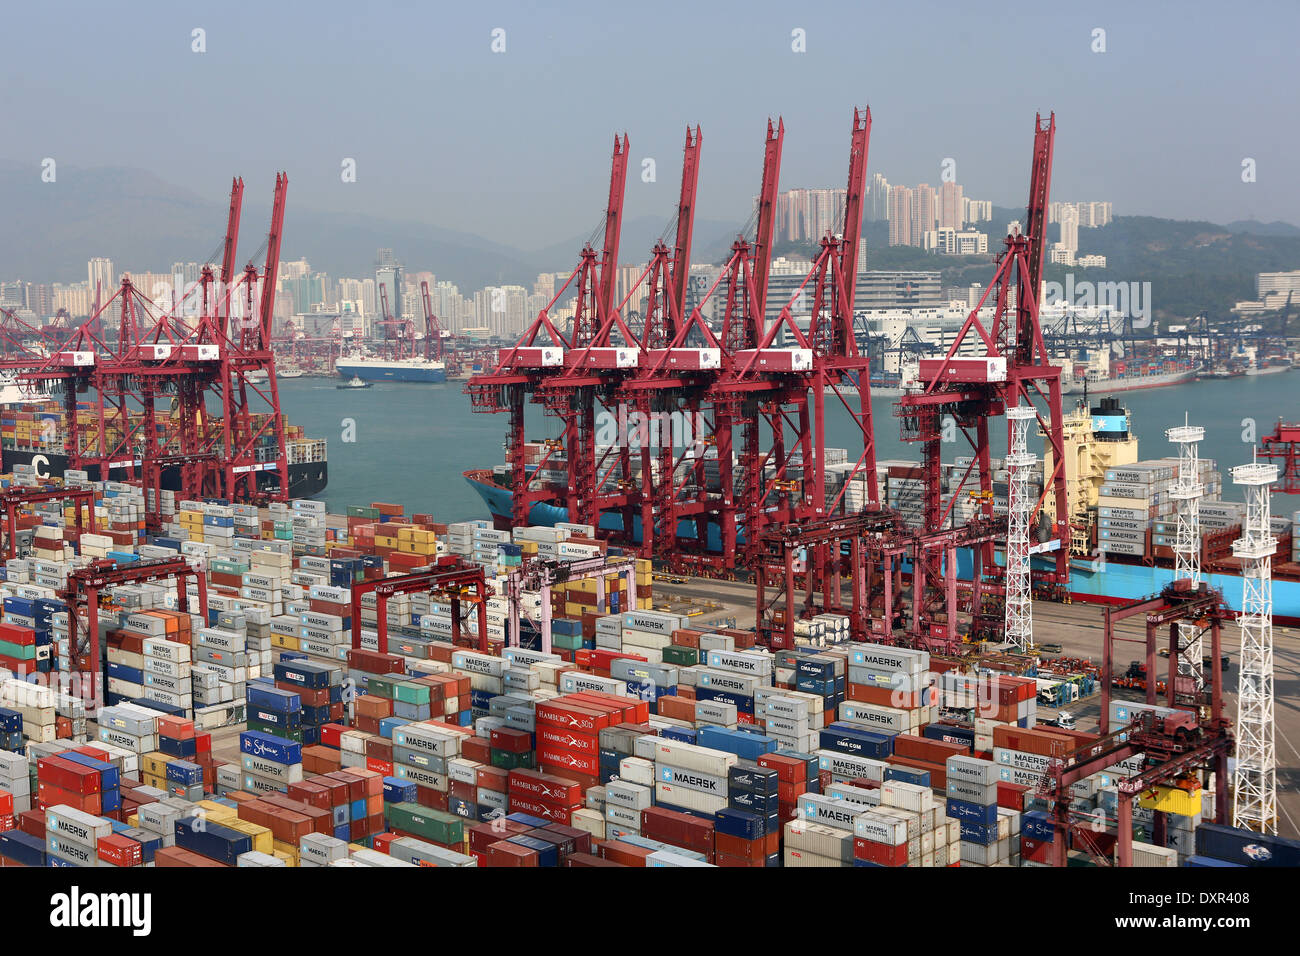 Hong Kong, China, loading cranes in the Hong Kong International Terminal, Container Port Stock Photo